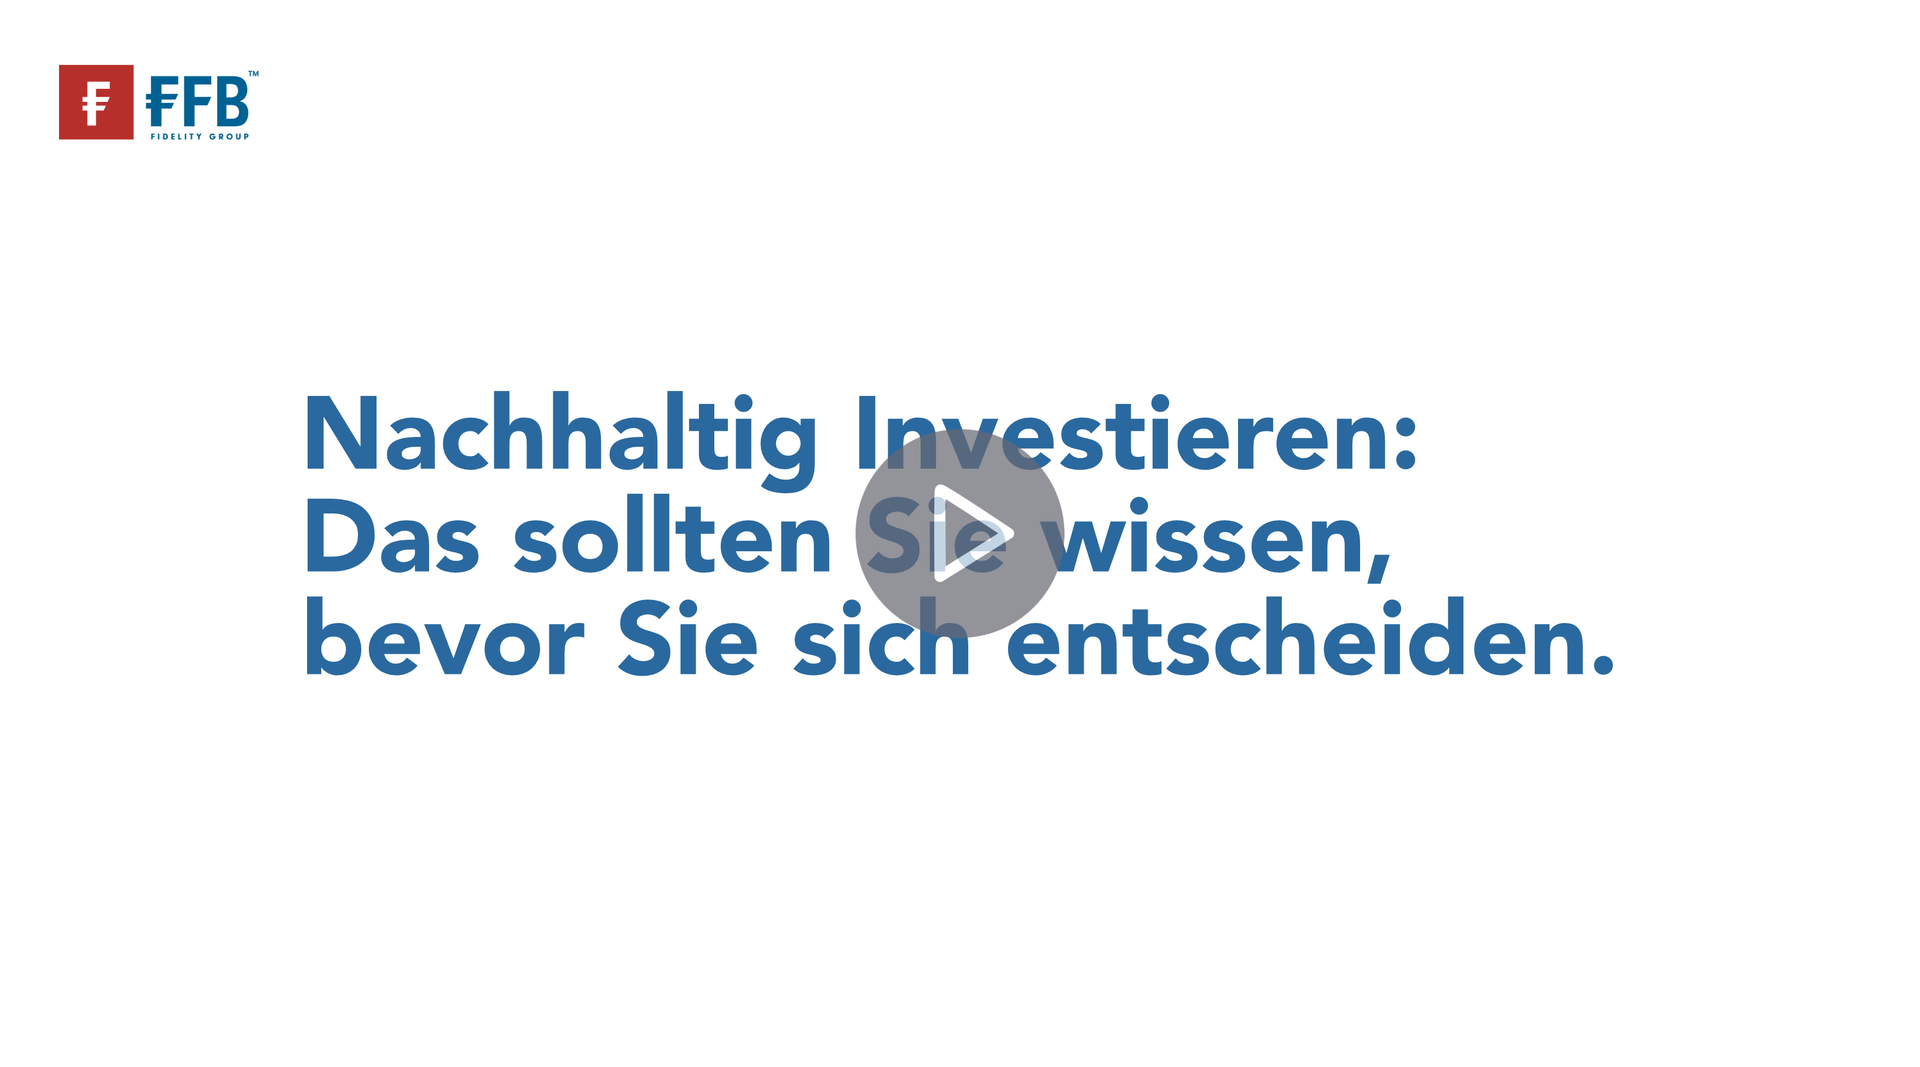 Informationsvideo der Bank FFB: Nachhaltig Investieren